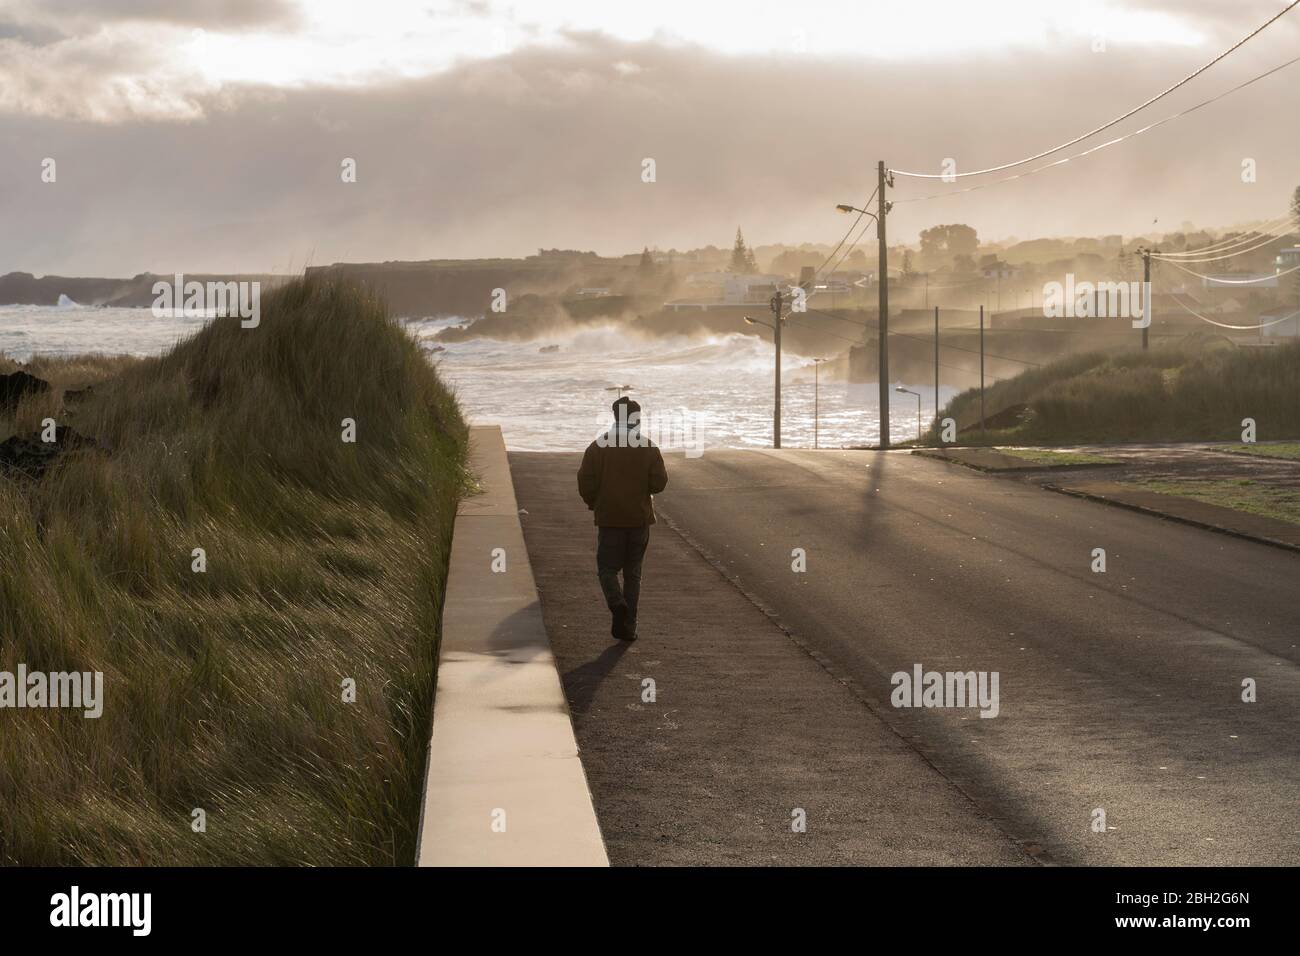 Vue arrière d'un homme marchant sur une route sur la côte, île de Sao Miguel, Açores, Portugal Banque D'Images